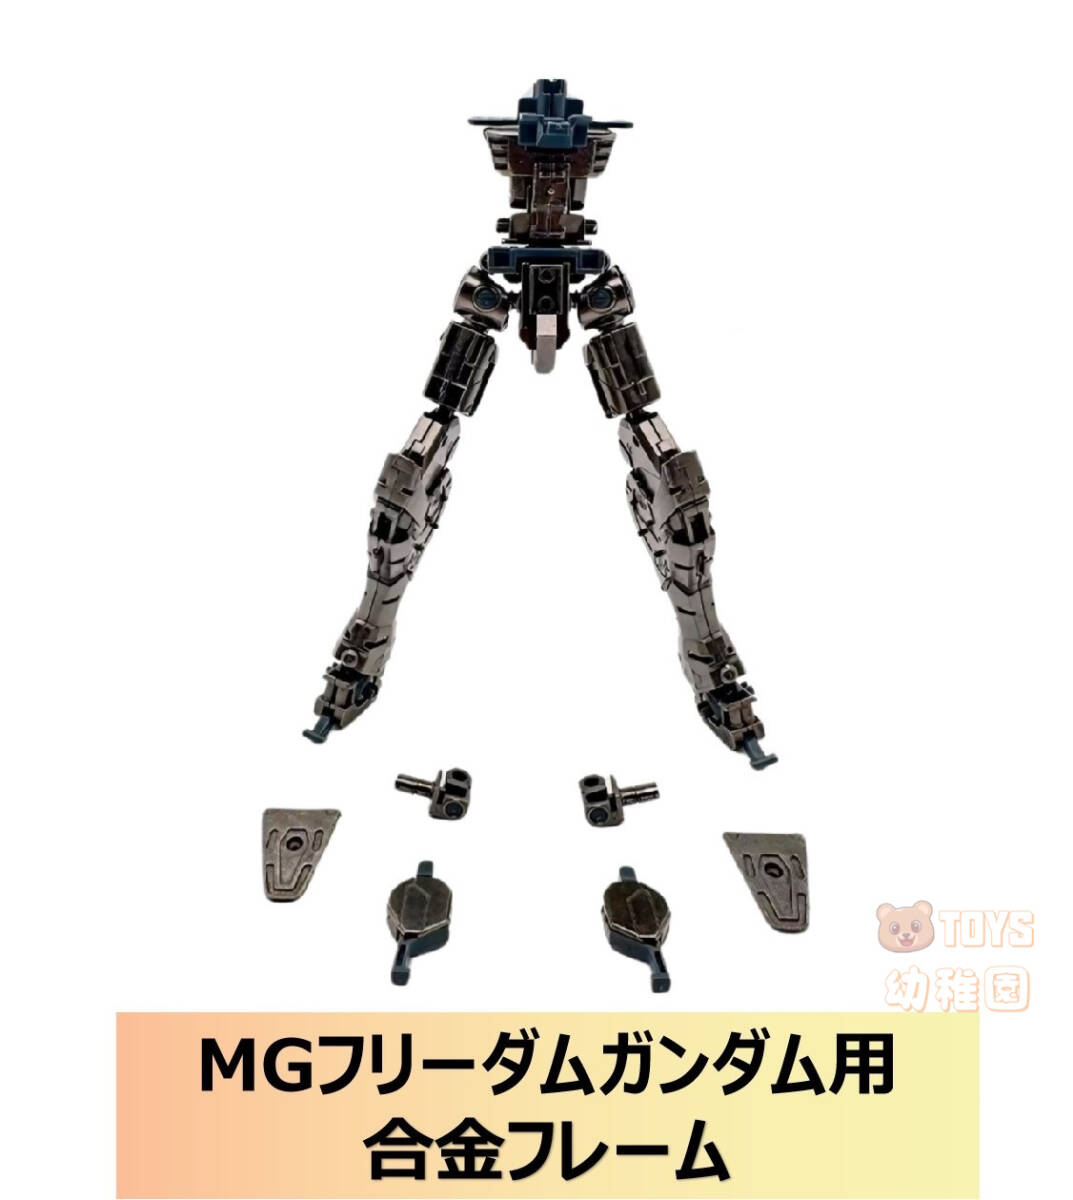  доставка внутри страны [DIAN CHANG]1/100 MG freedom Gundam для сплав рама модифицировано детали простой сборка новейший версия новый товар 